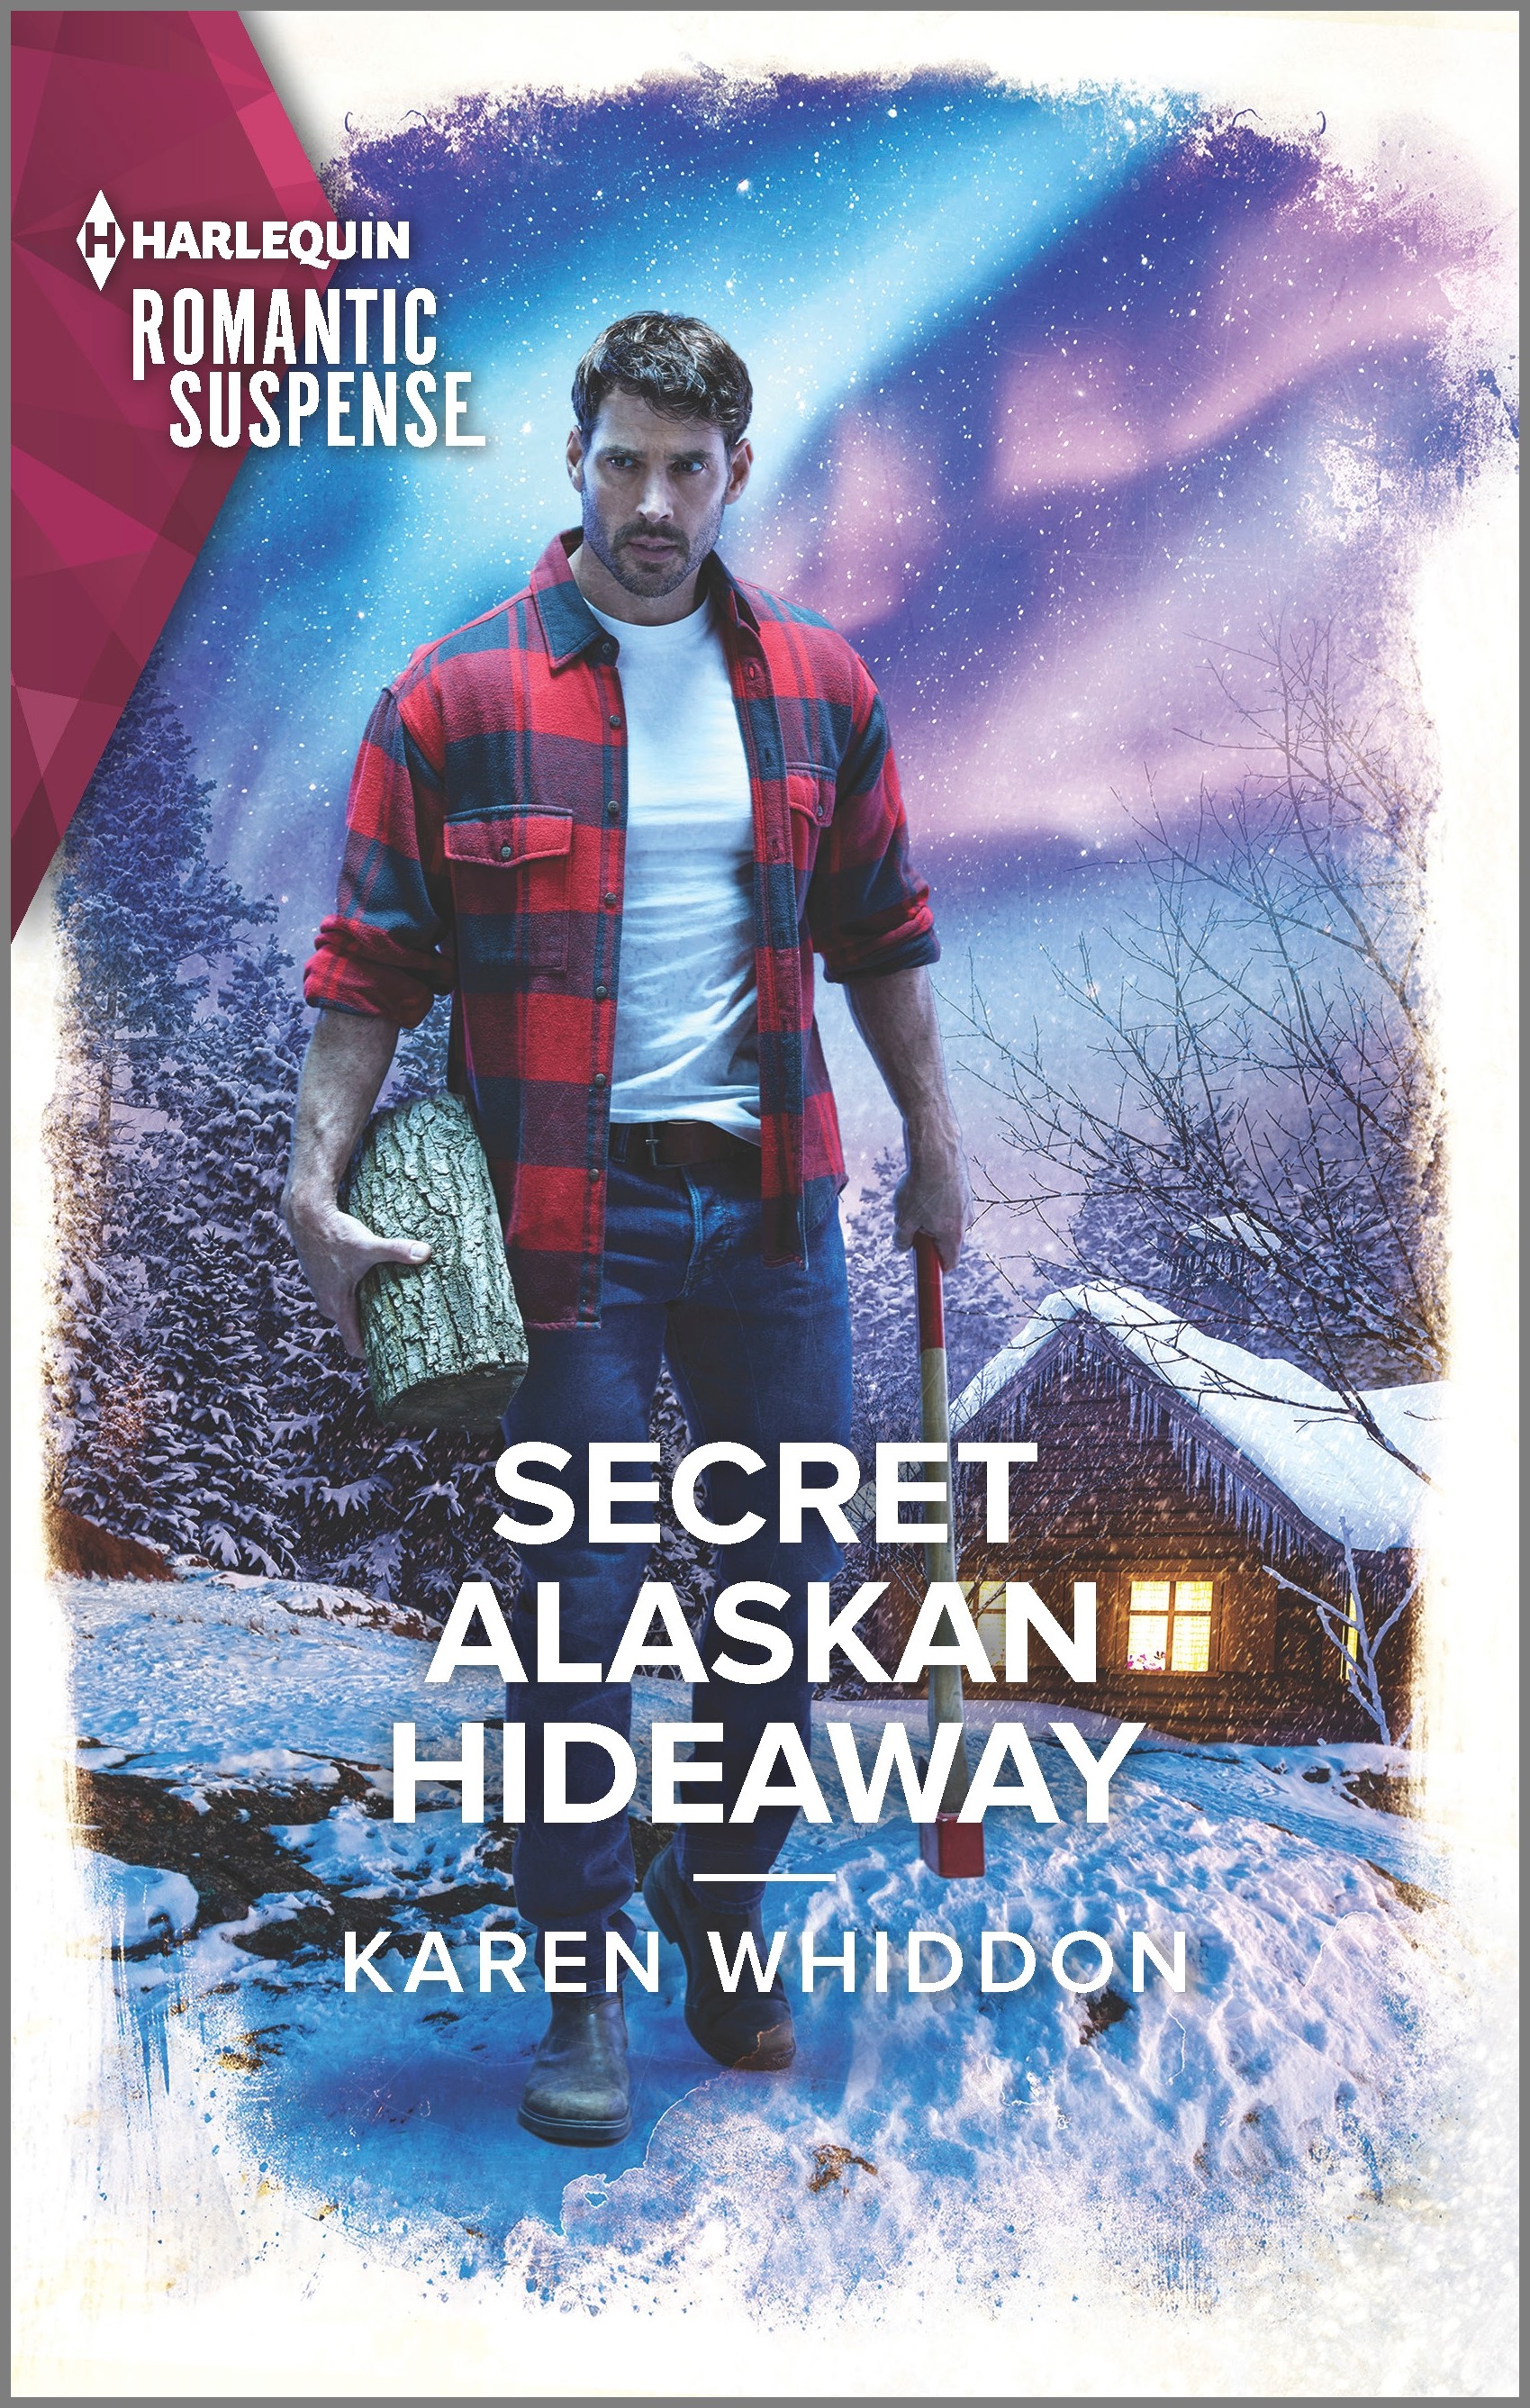 SECRET ALASKAN HIDEAWAY by Karen Whiddon